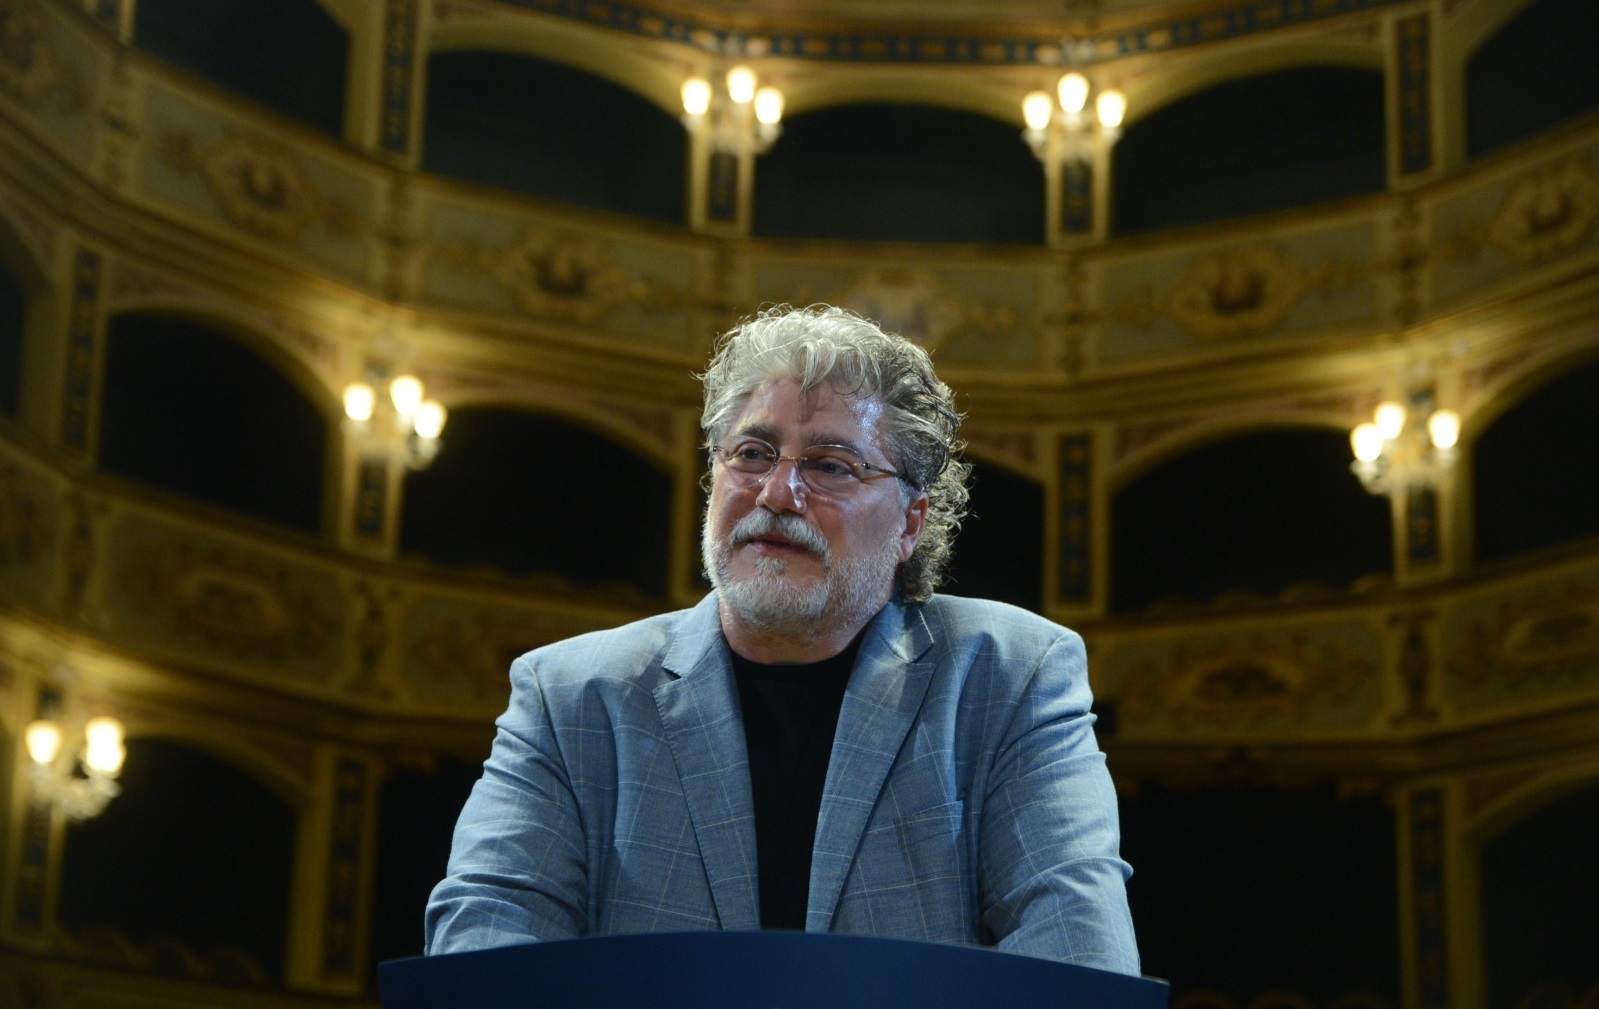 World-class tenor José Cura in Malta